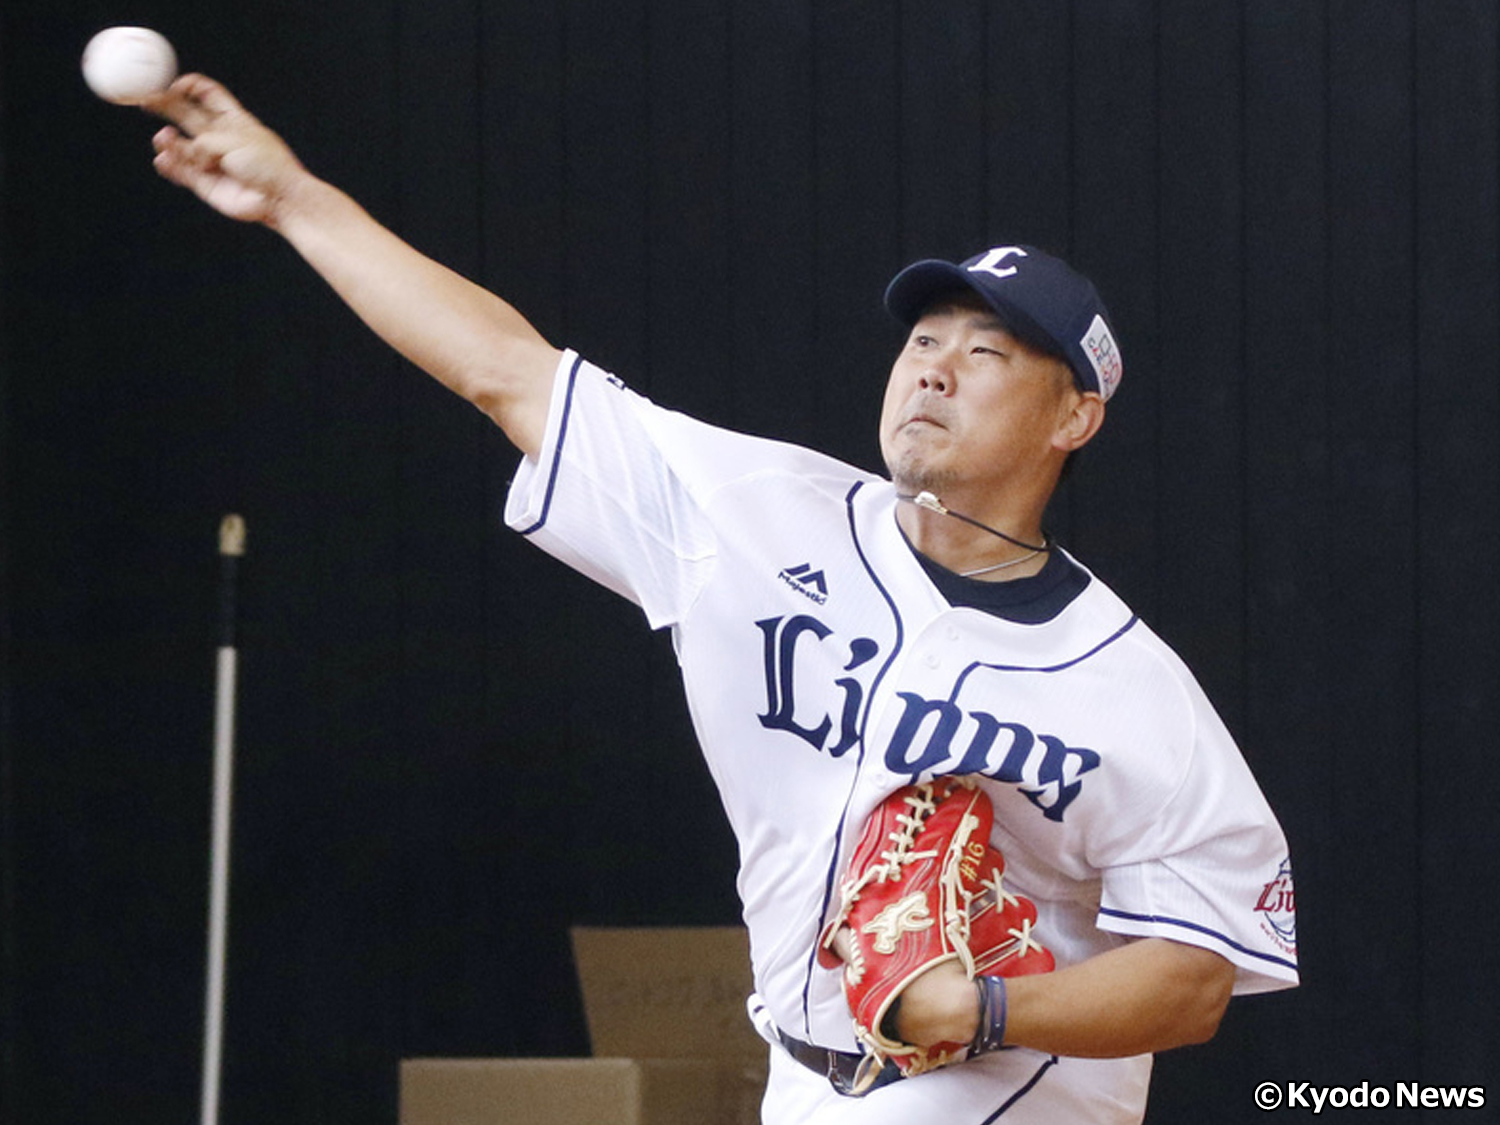 西武 松坂の初登板に韓国メディアも注目 歳月が過ぎた痕跡が垣間見えた Baseball King